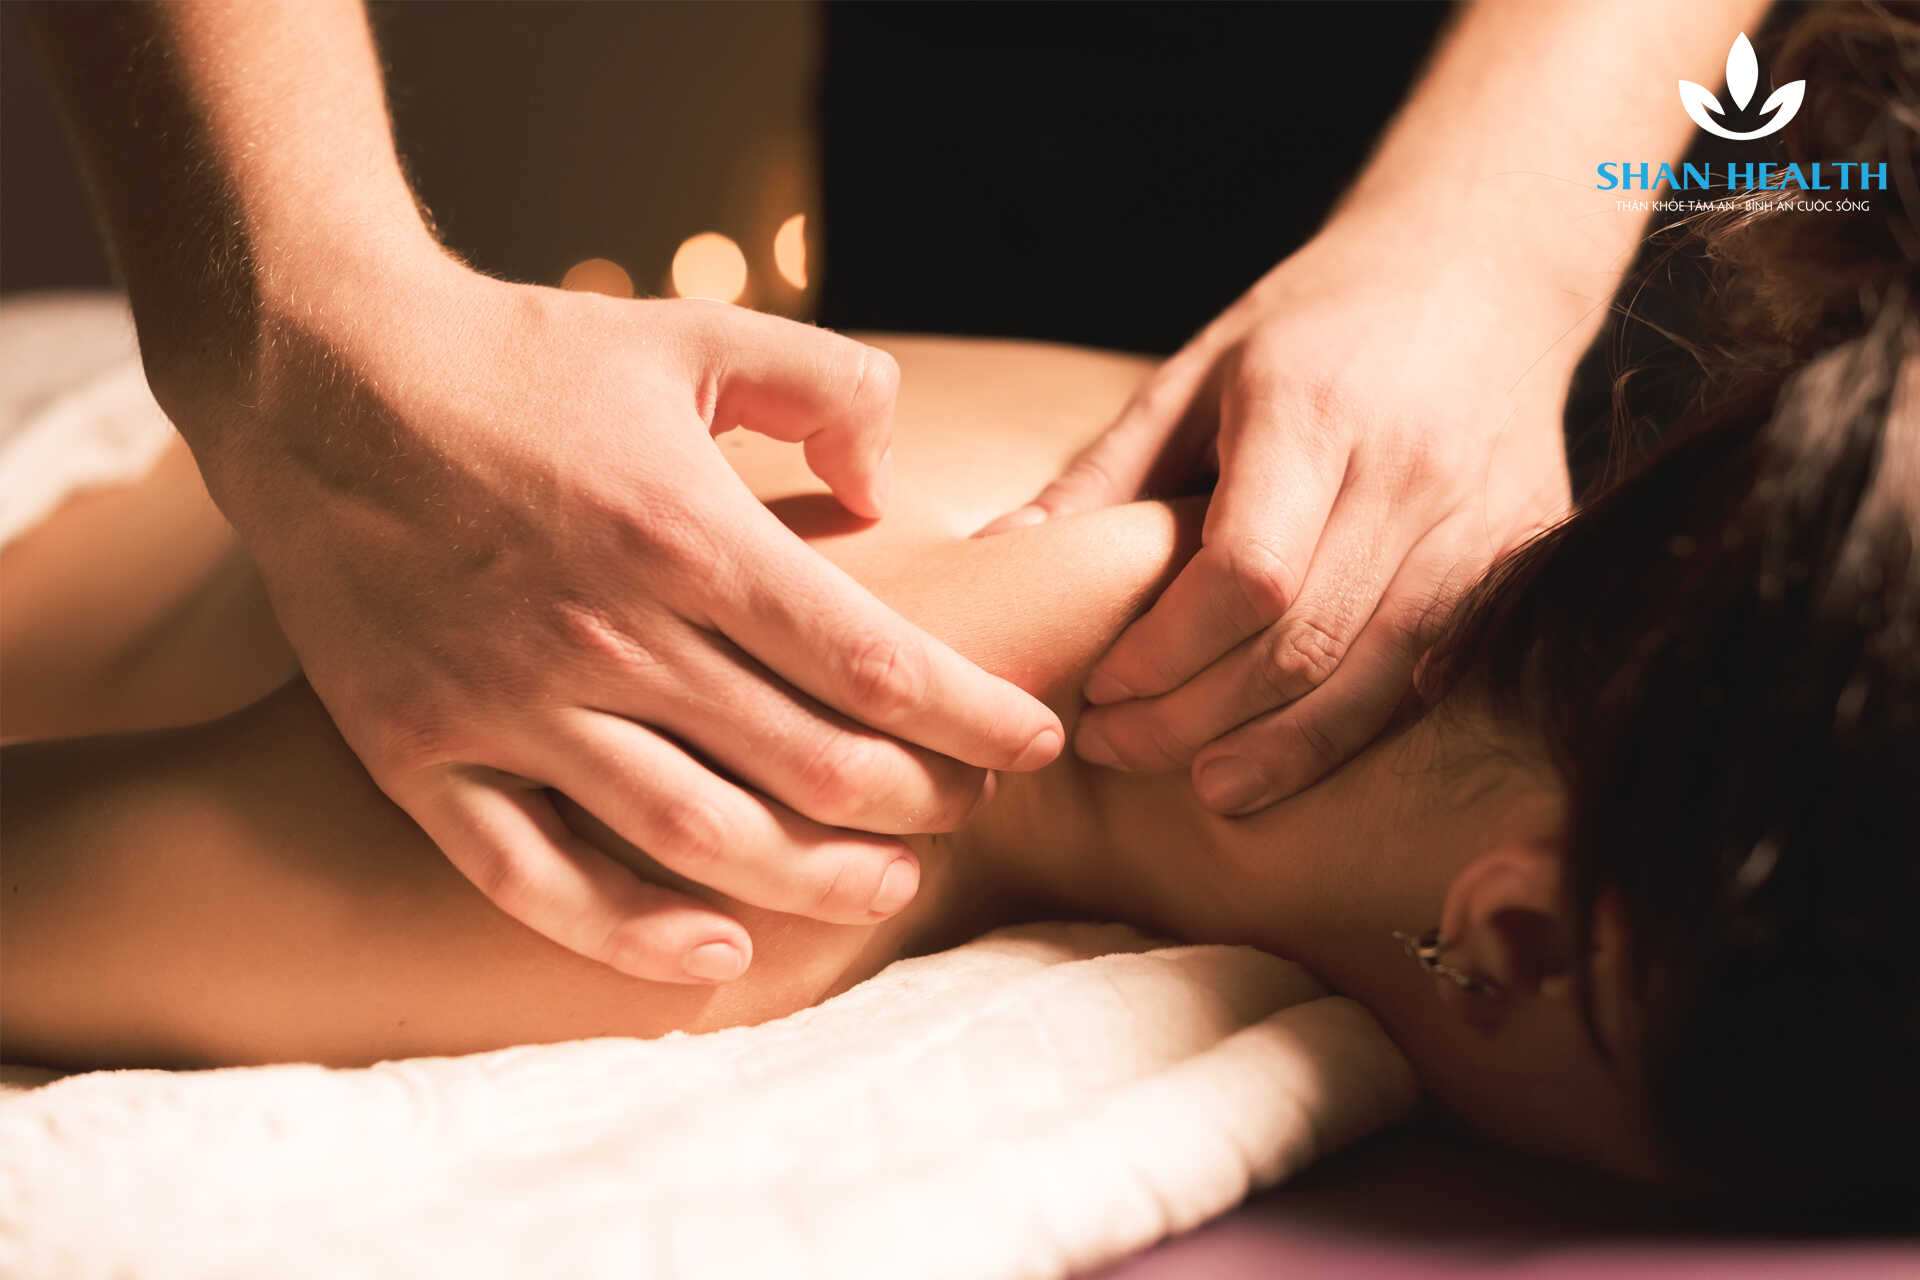 Massage body có tác dụng gì đối với sức khỏe và sắc đẹp?